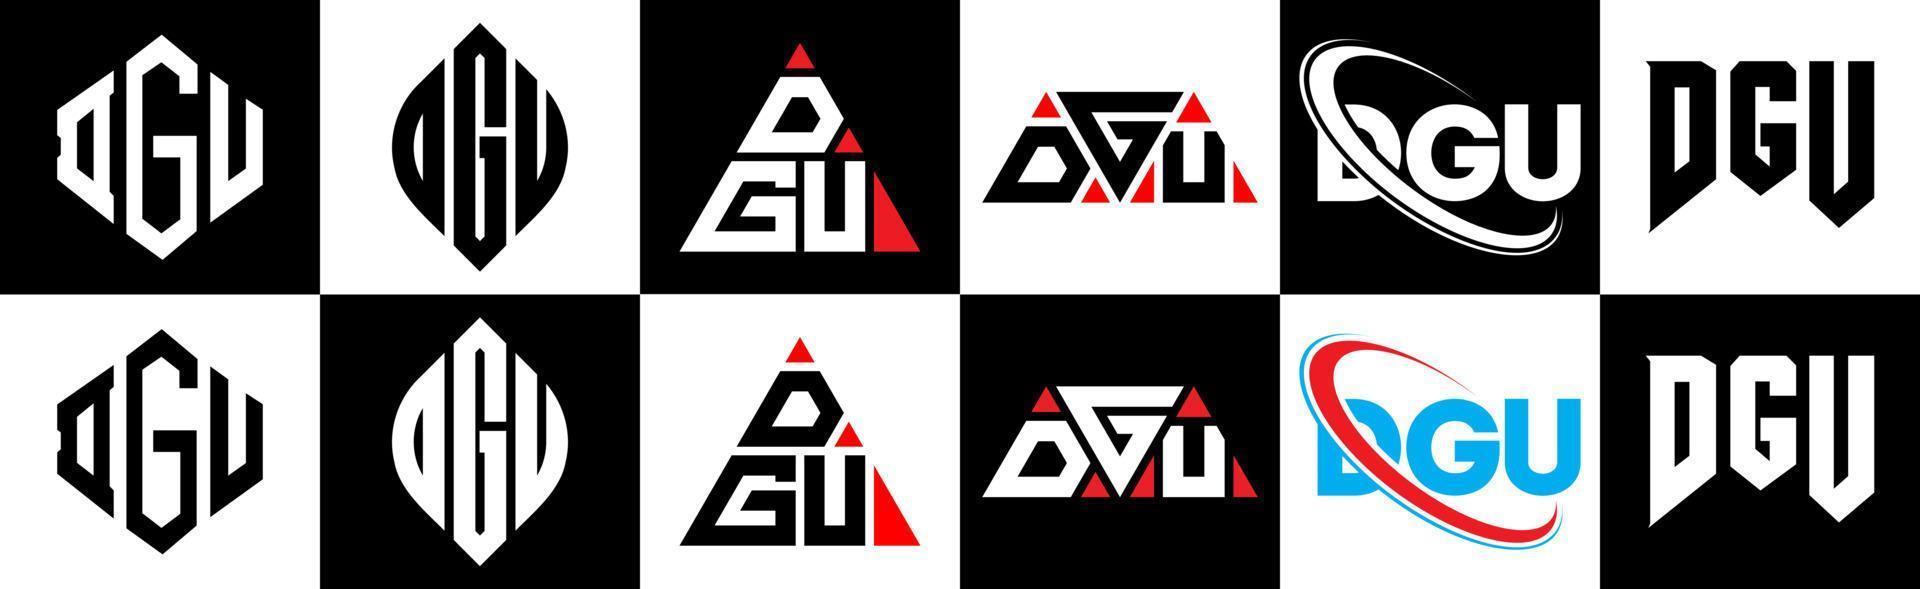 création de logo de lettre dgu en six styles. dgu polygone, cercle, triangle, hexagone, style plat et simple avec logo de lettre de variation de couleur noir et blanc dans un plan de travail. dgu logo minimaliste et classique vecteur